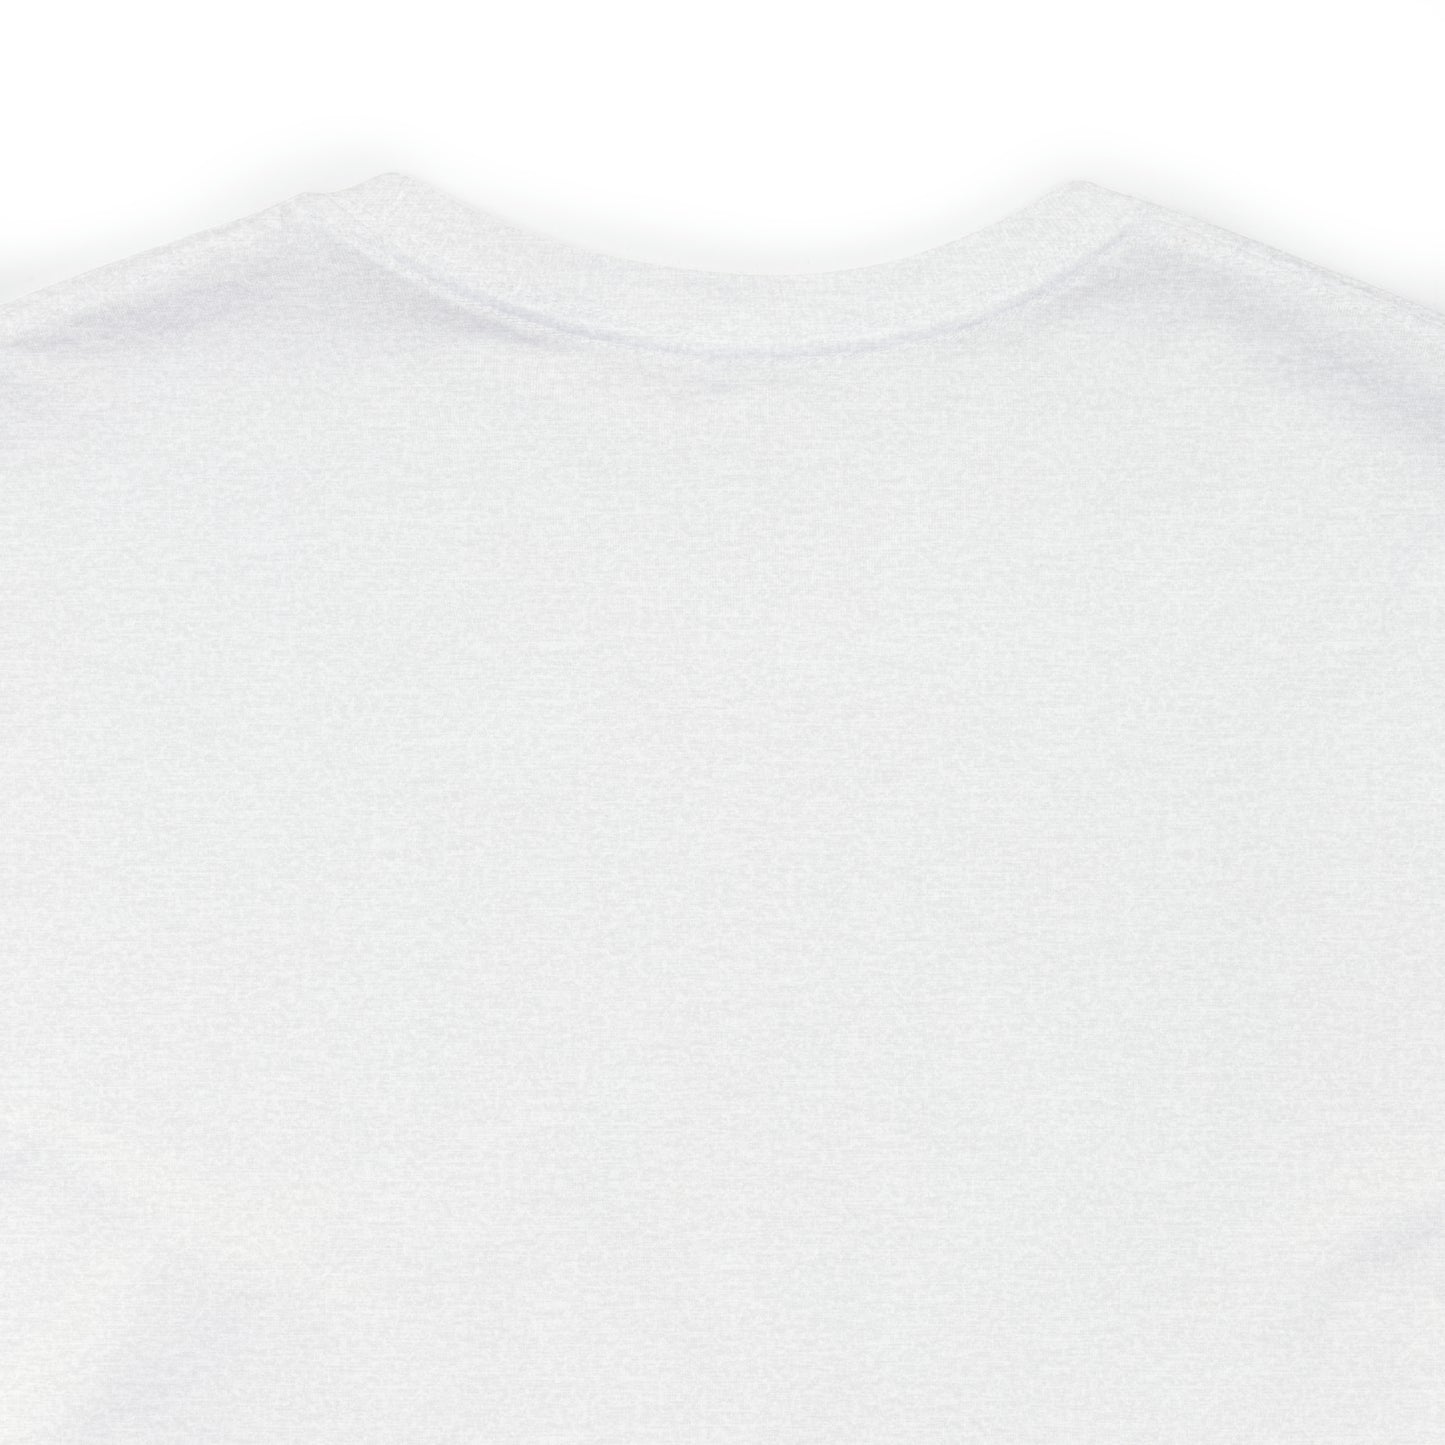 Dennisport, Mass Pickleball Short Sleeve T-Shirt